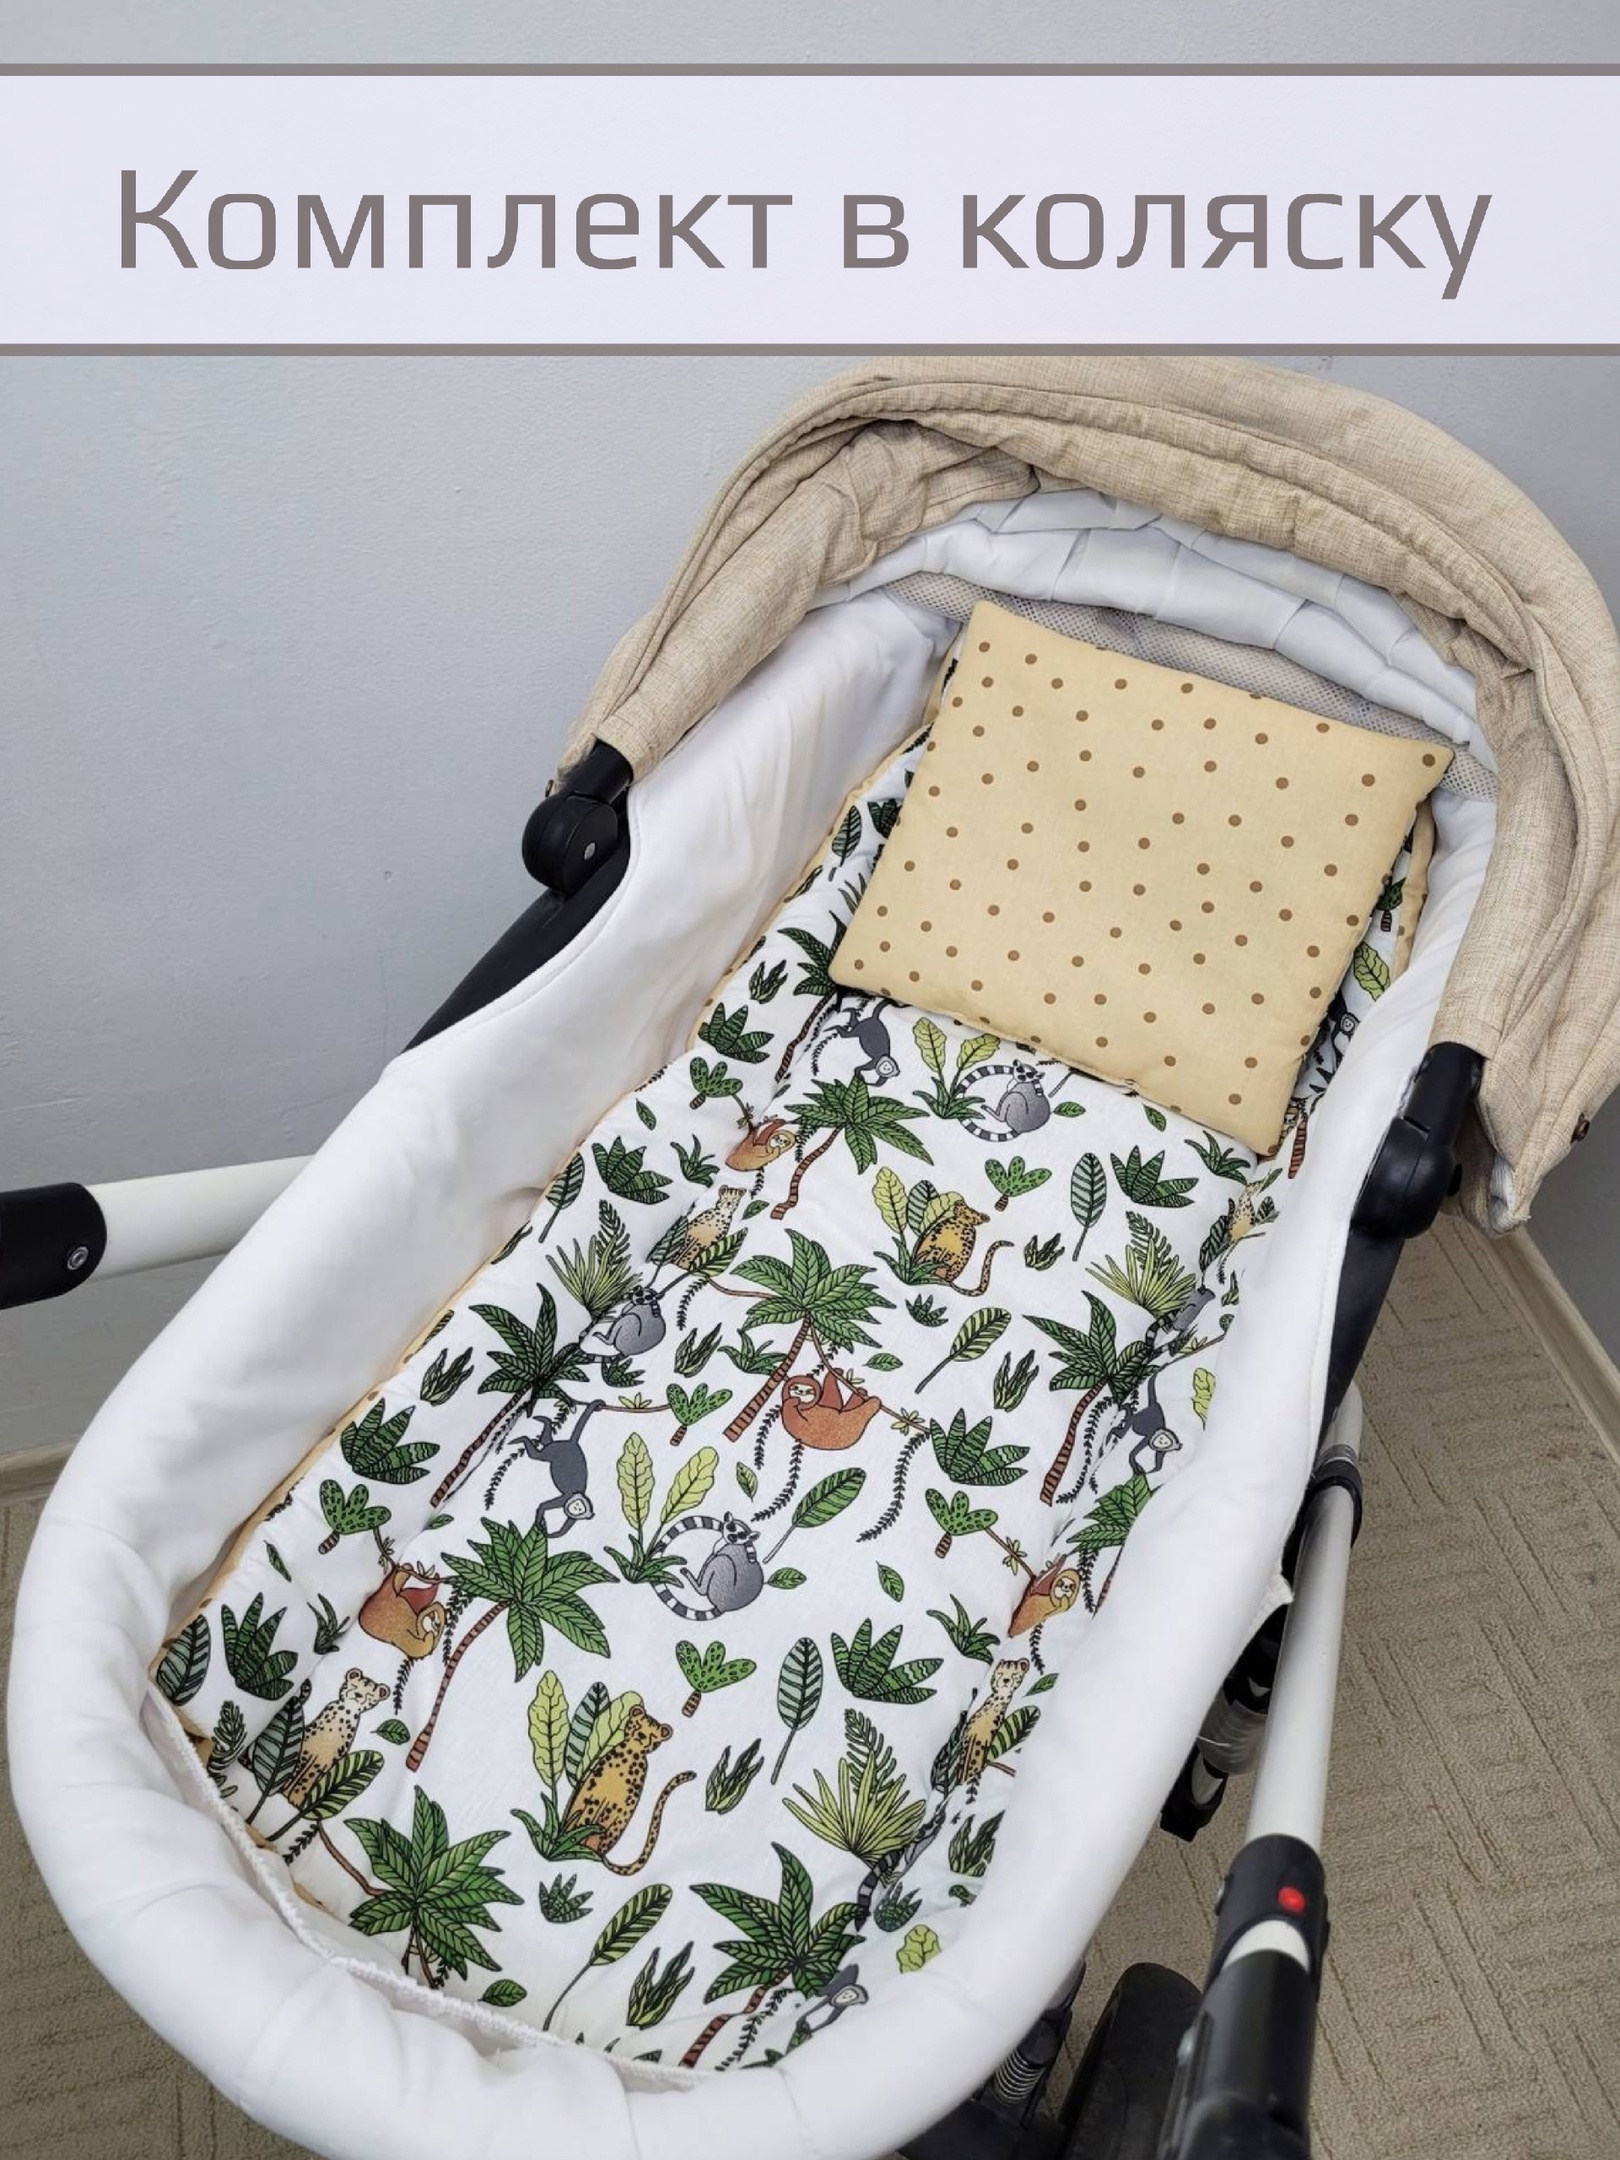 Комплект в коляску Матрасик, подушка Ленивцы с пальмами 40*80см, подушка